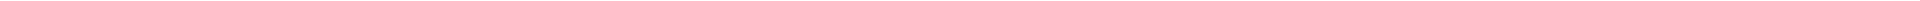 Лечение кариеса зубов - цены в Астане, Алматы, Атырау, Усть-Каменогорск, Уральск, Кокшетау в Казахстане, фото 20